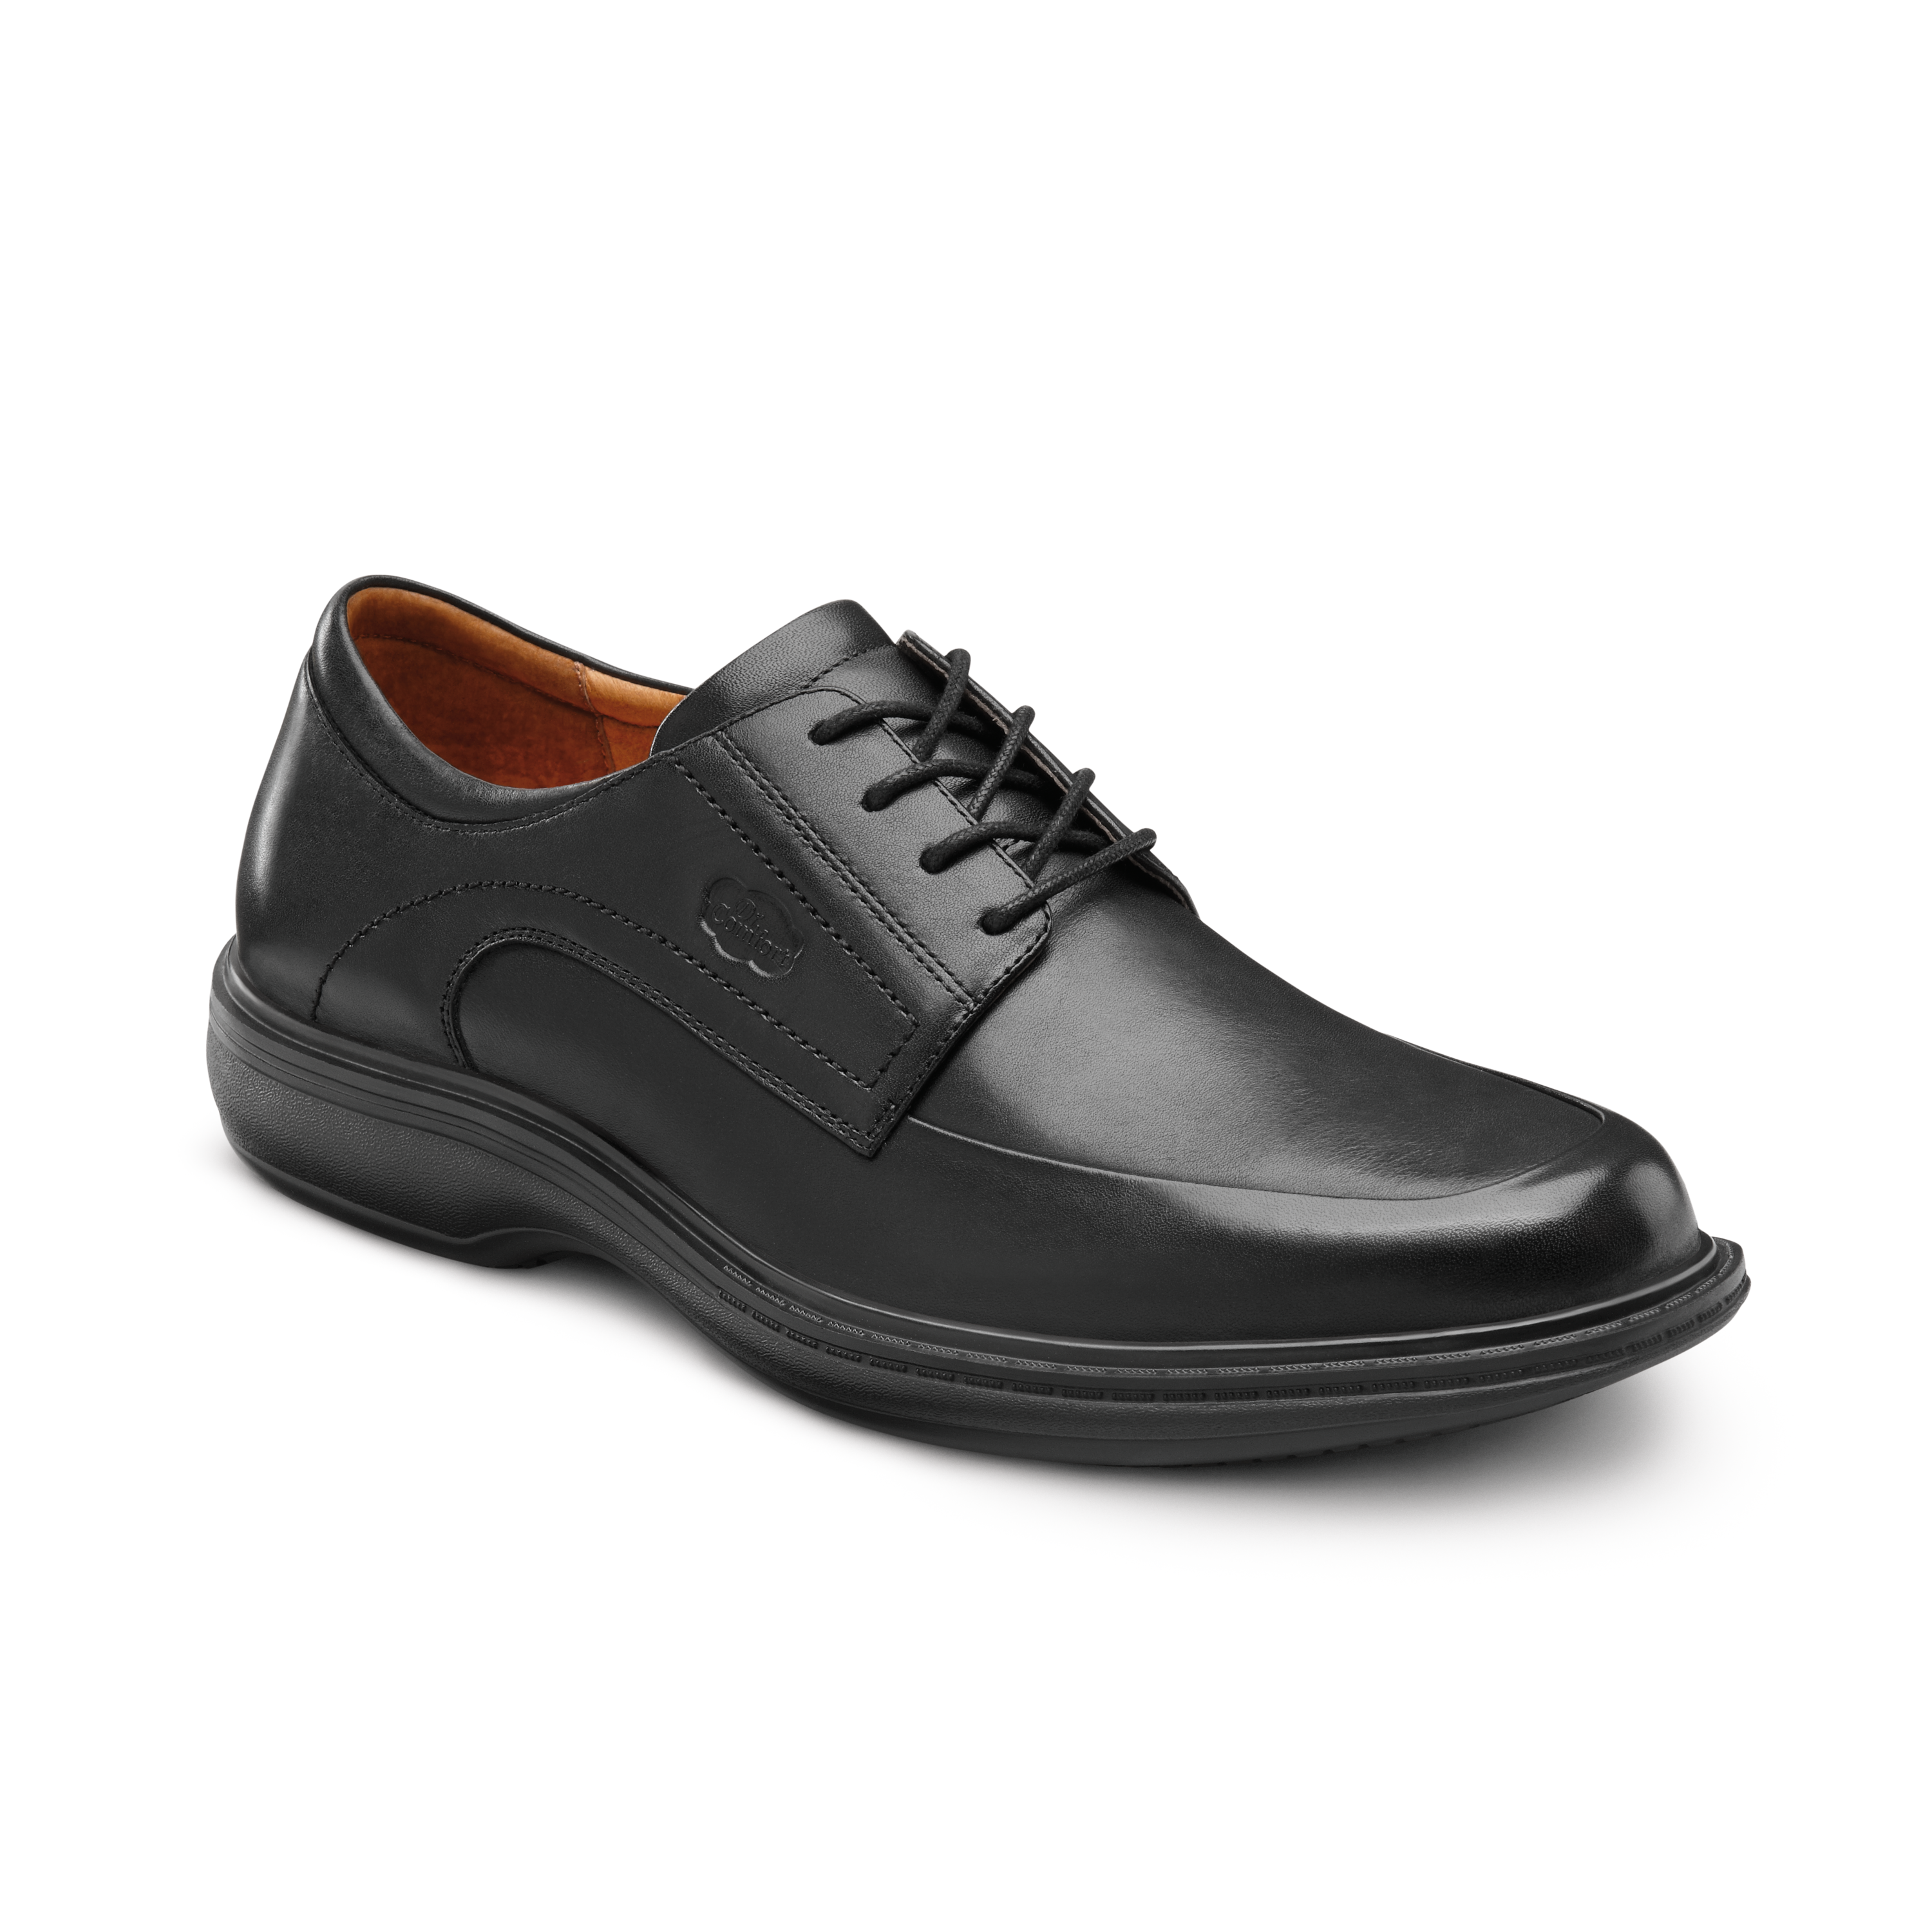 Produktbild DR. COMFORT® Classic schwarz, Orthopädische Schuhe, Sehr eleganter Schnitt. Edles Design. Minimales Gewicht bei maximalem Comfort